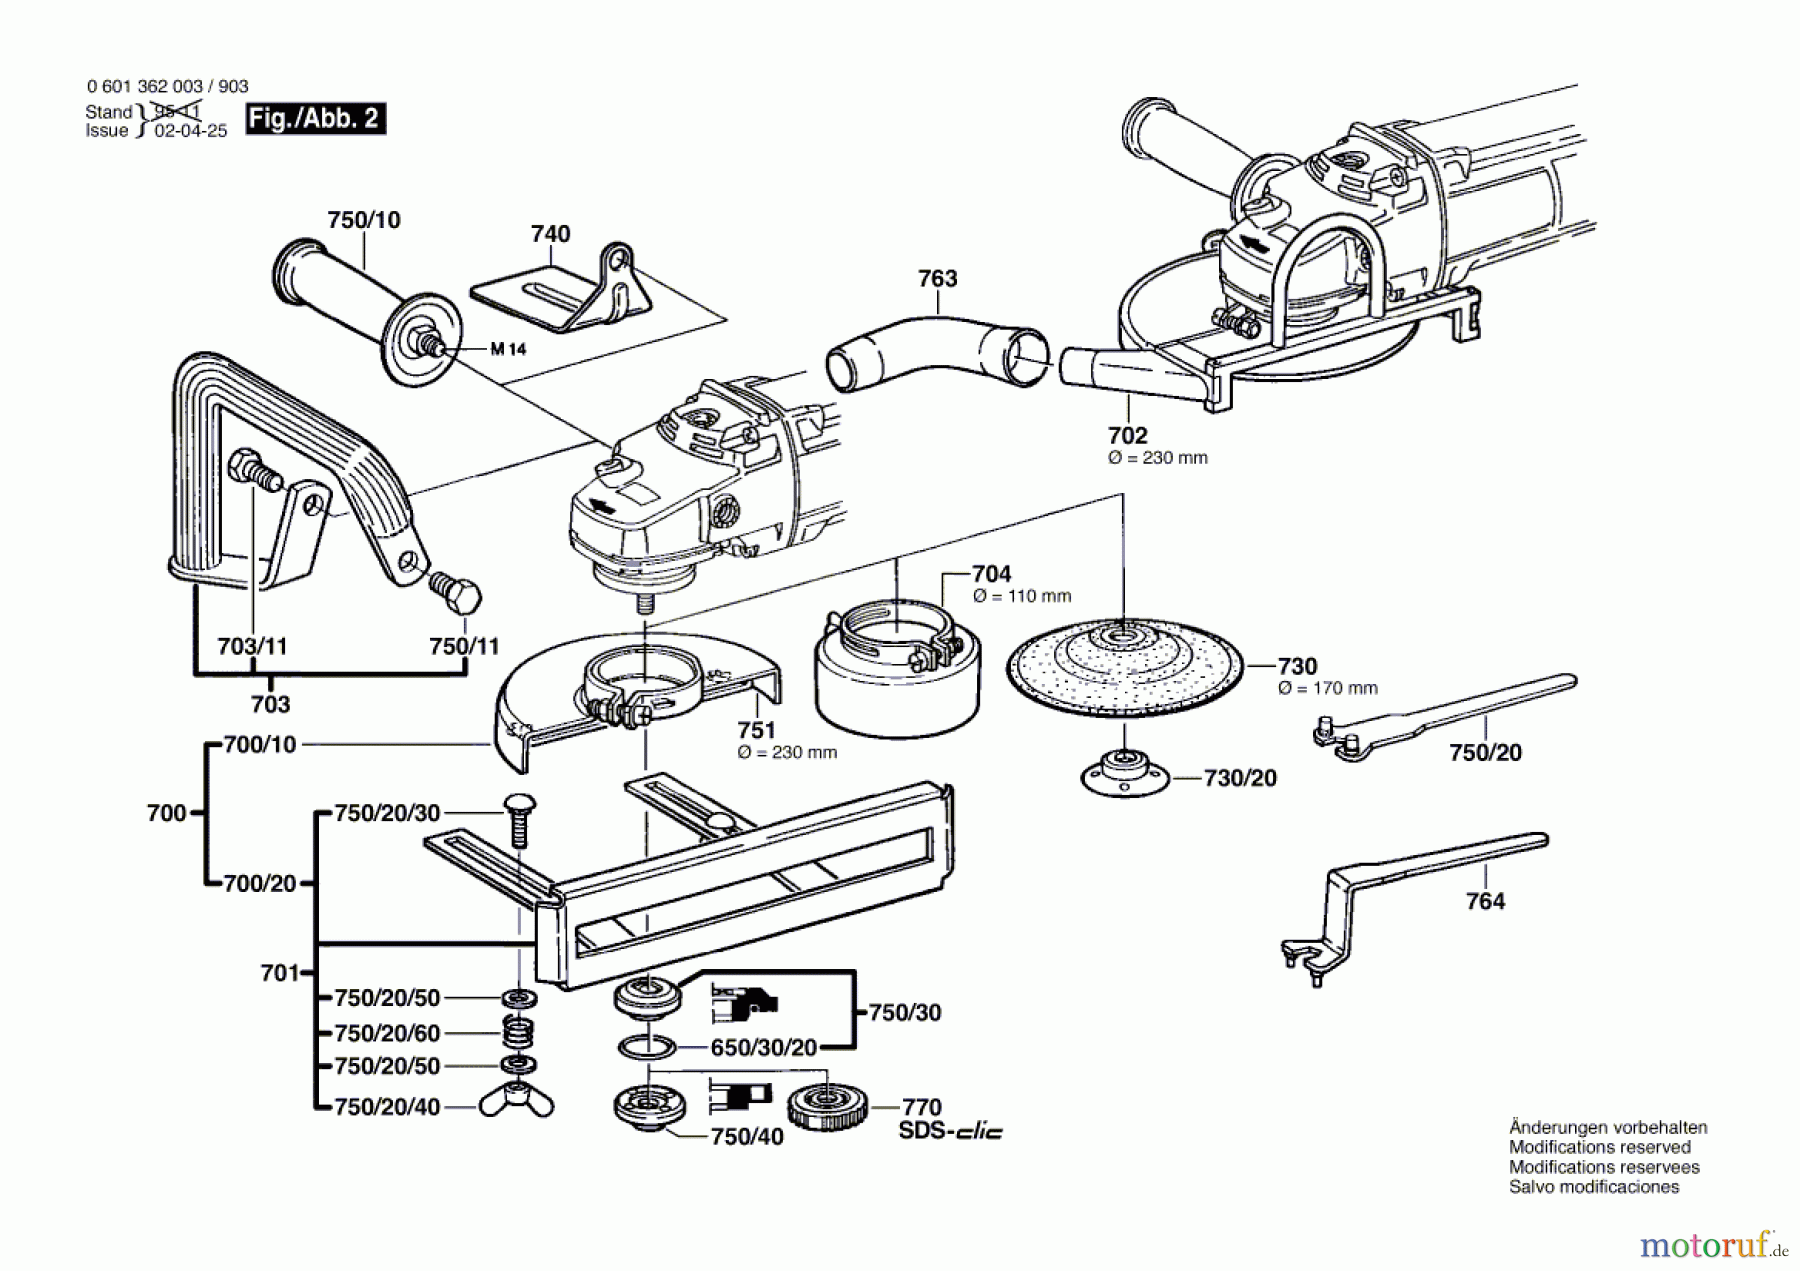  Bosch Werkzeug Winkelschleifer GWS 23-230 Seite 2